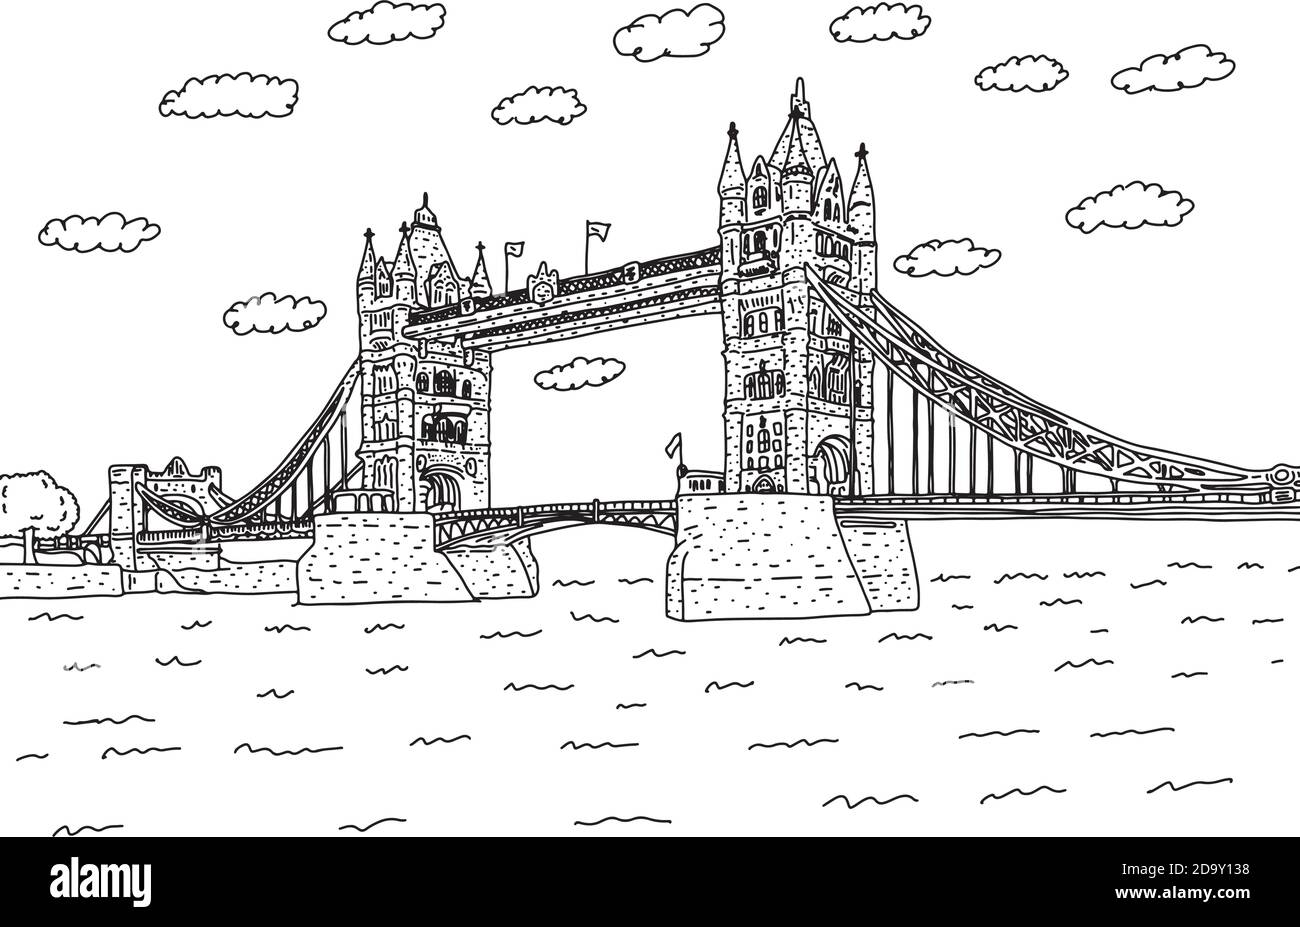 London Tower Bridge mit Wolken Vektor-Illustration Skizze Doodle Hand gezeichnet mit schwarzen Linien isoliert auf weißem Hintergrund. Europäisches Wahrzeichen. Stock Vektor